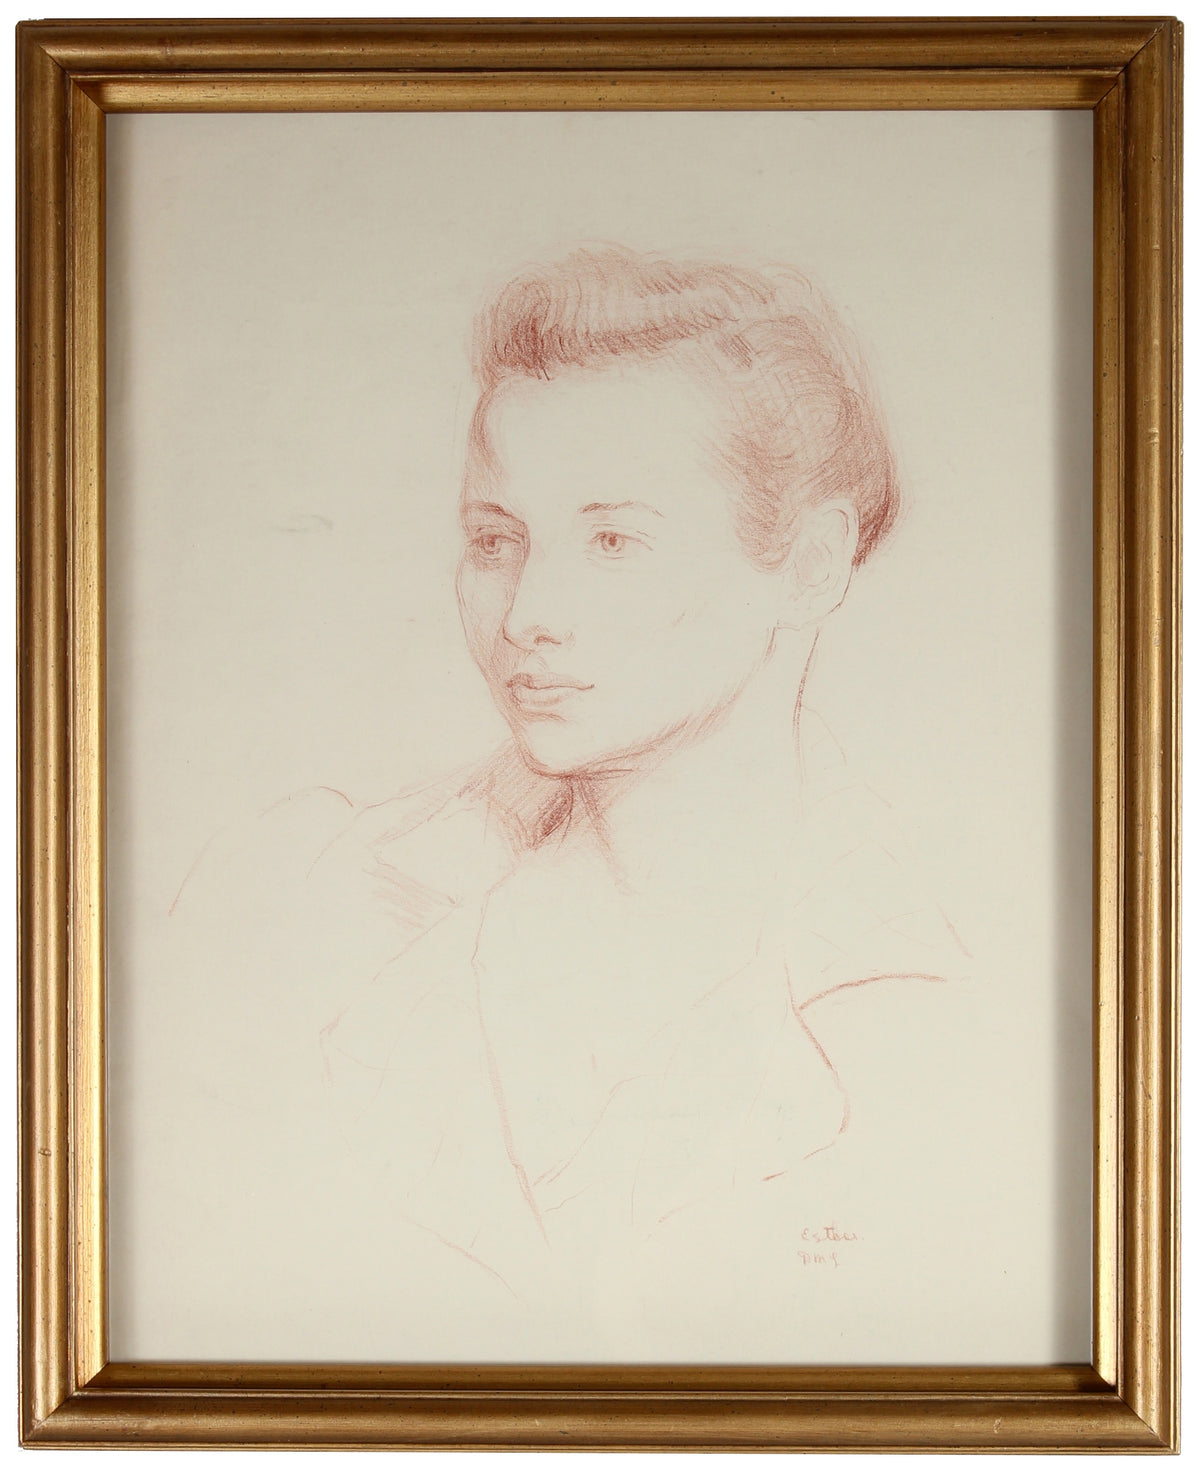 &lt;i&gt;Portrait of Esther Landis&lt;/i&gt;&lt;br&gt;Mid Century Conte Crayon&lt;br&gt;&lt;br&gt;#86154